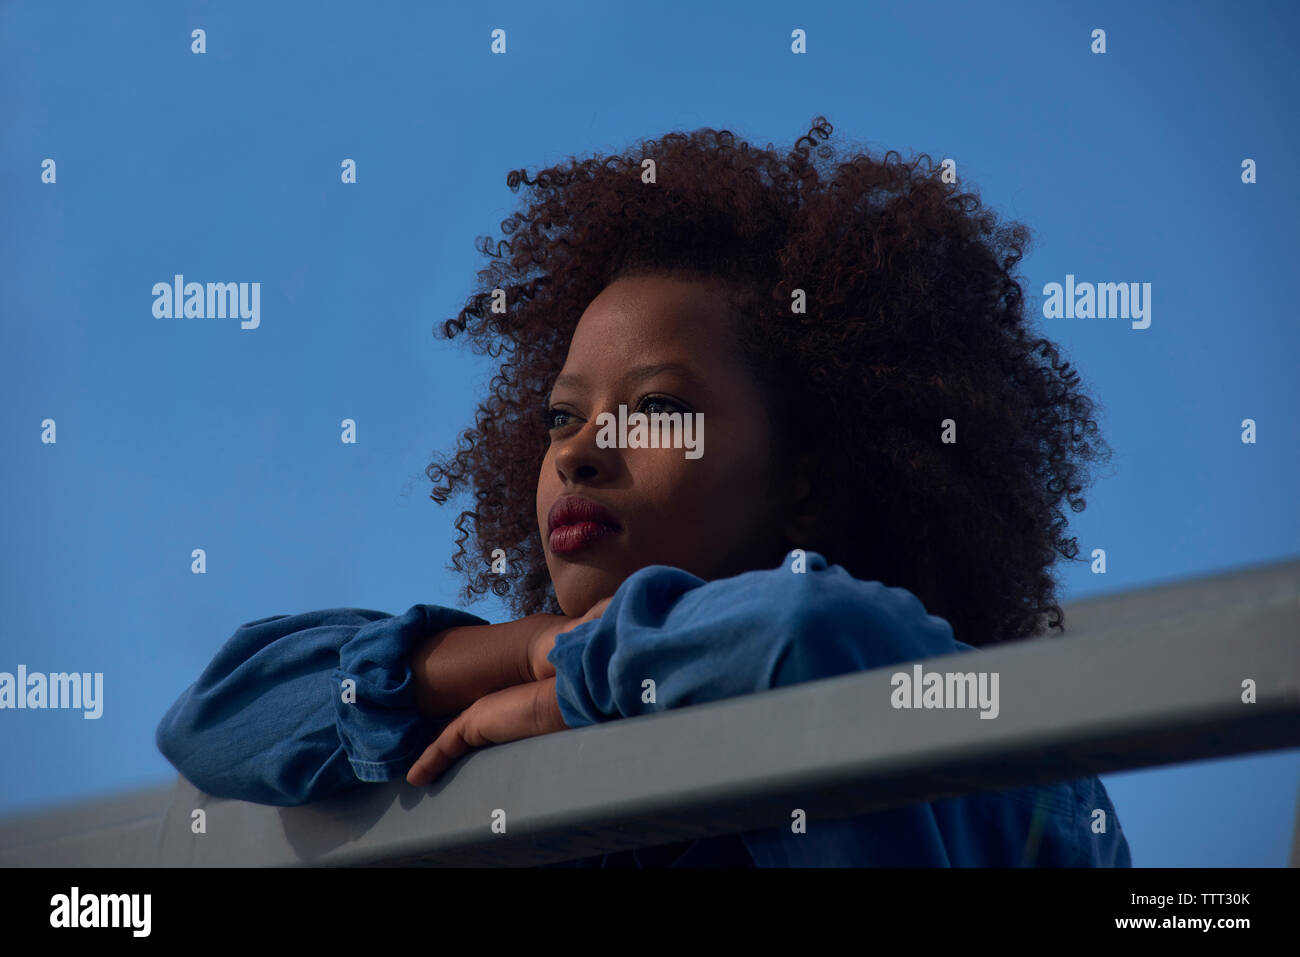 Basso angolo di vista premurosa donna appoggiata sulla ringhiera contro il cielo blu chiaro Foto Stock